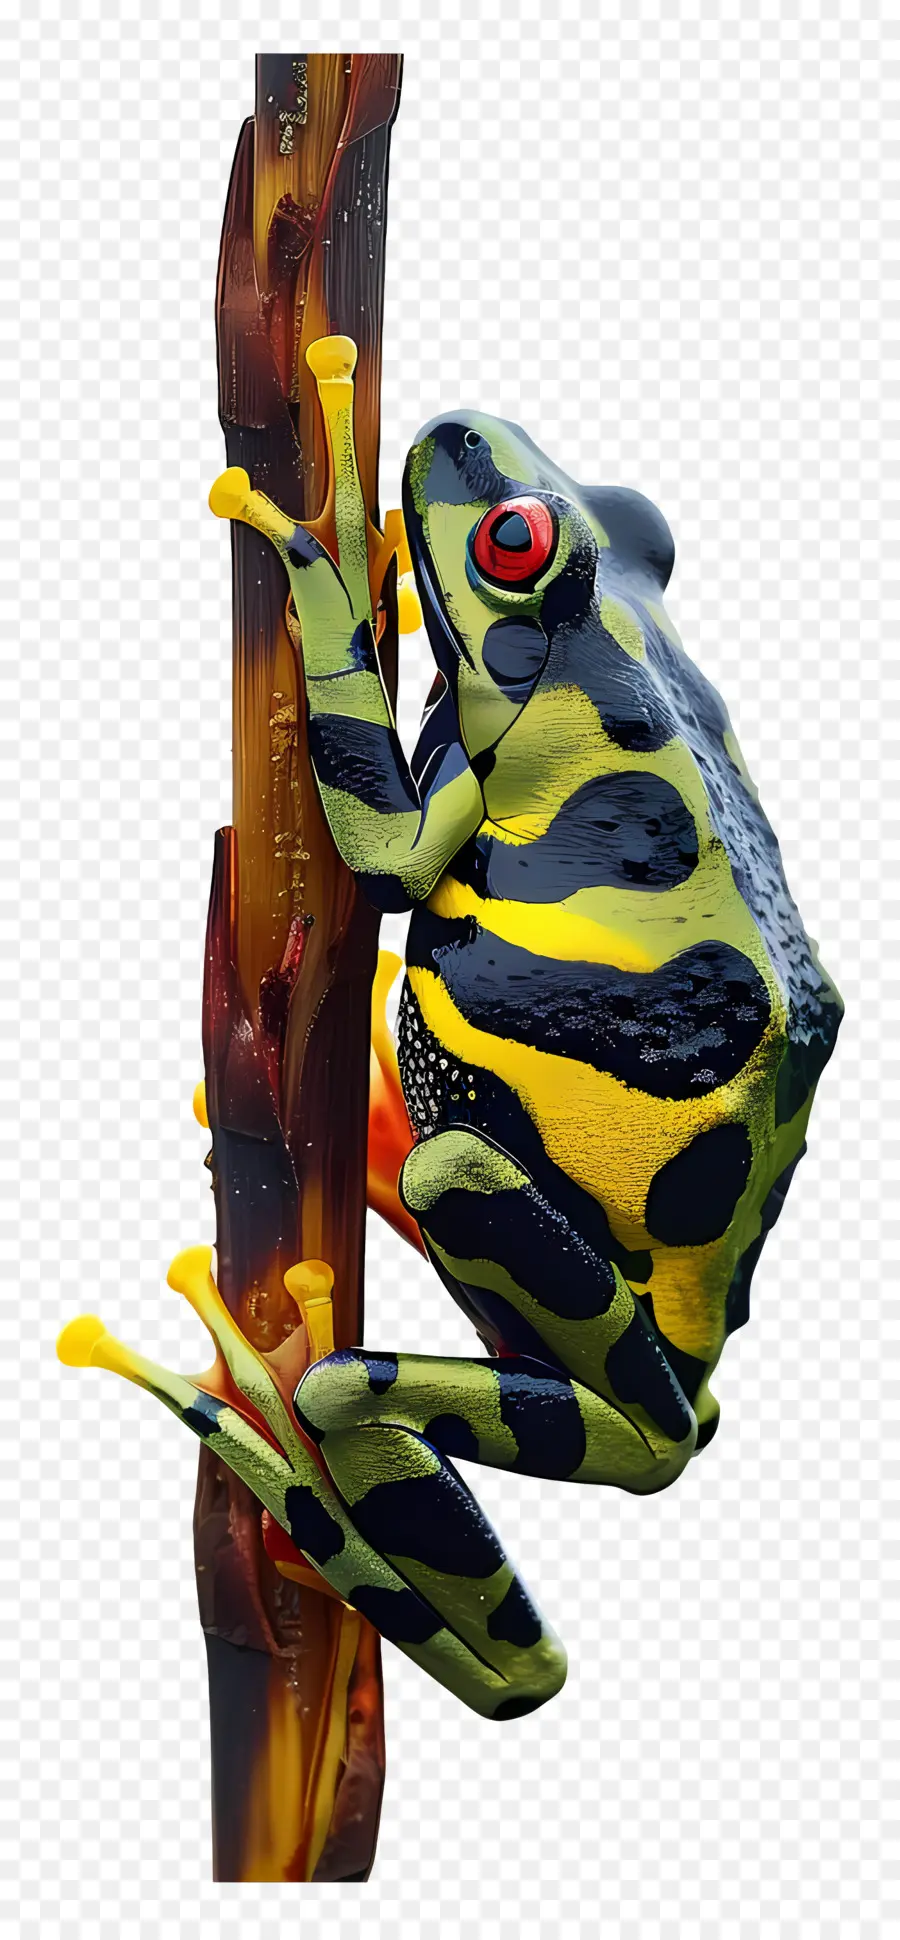 ếch ếch xanh gai màu vàng - Cận cảnh con ếch đầy màu sắc trên gậy